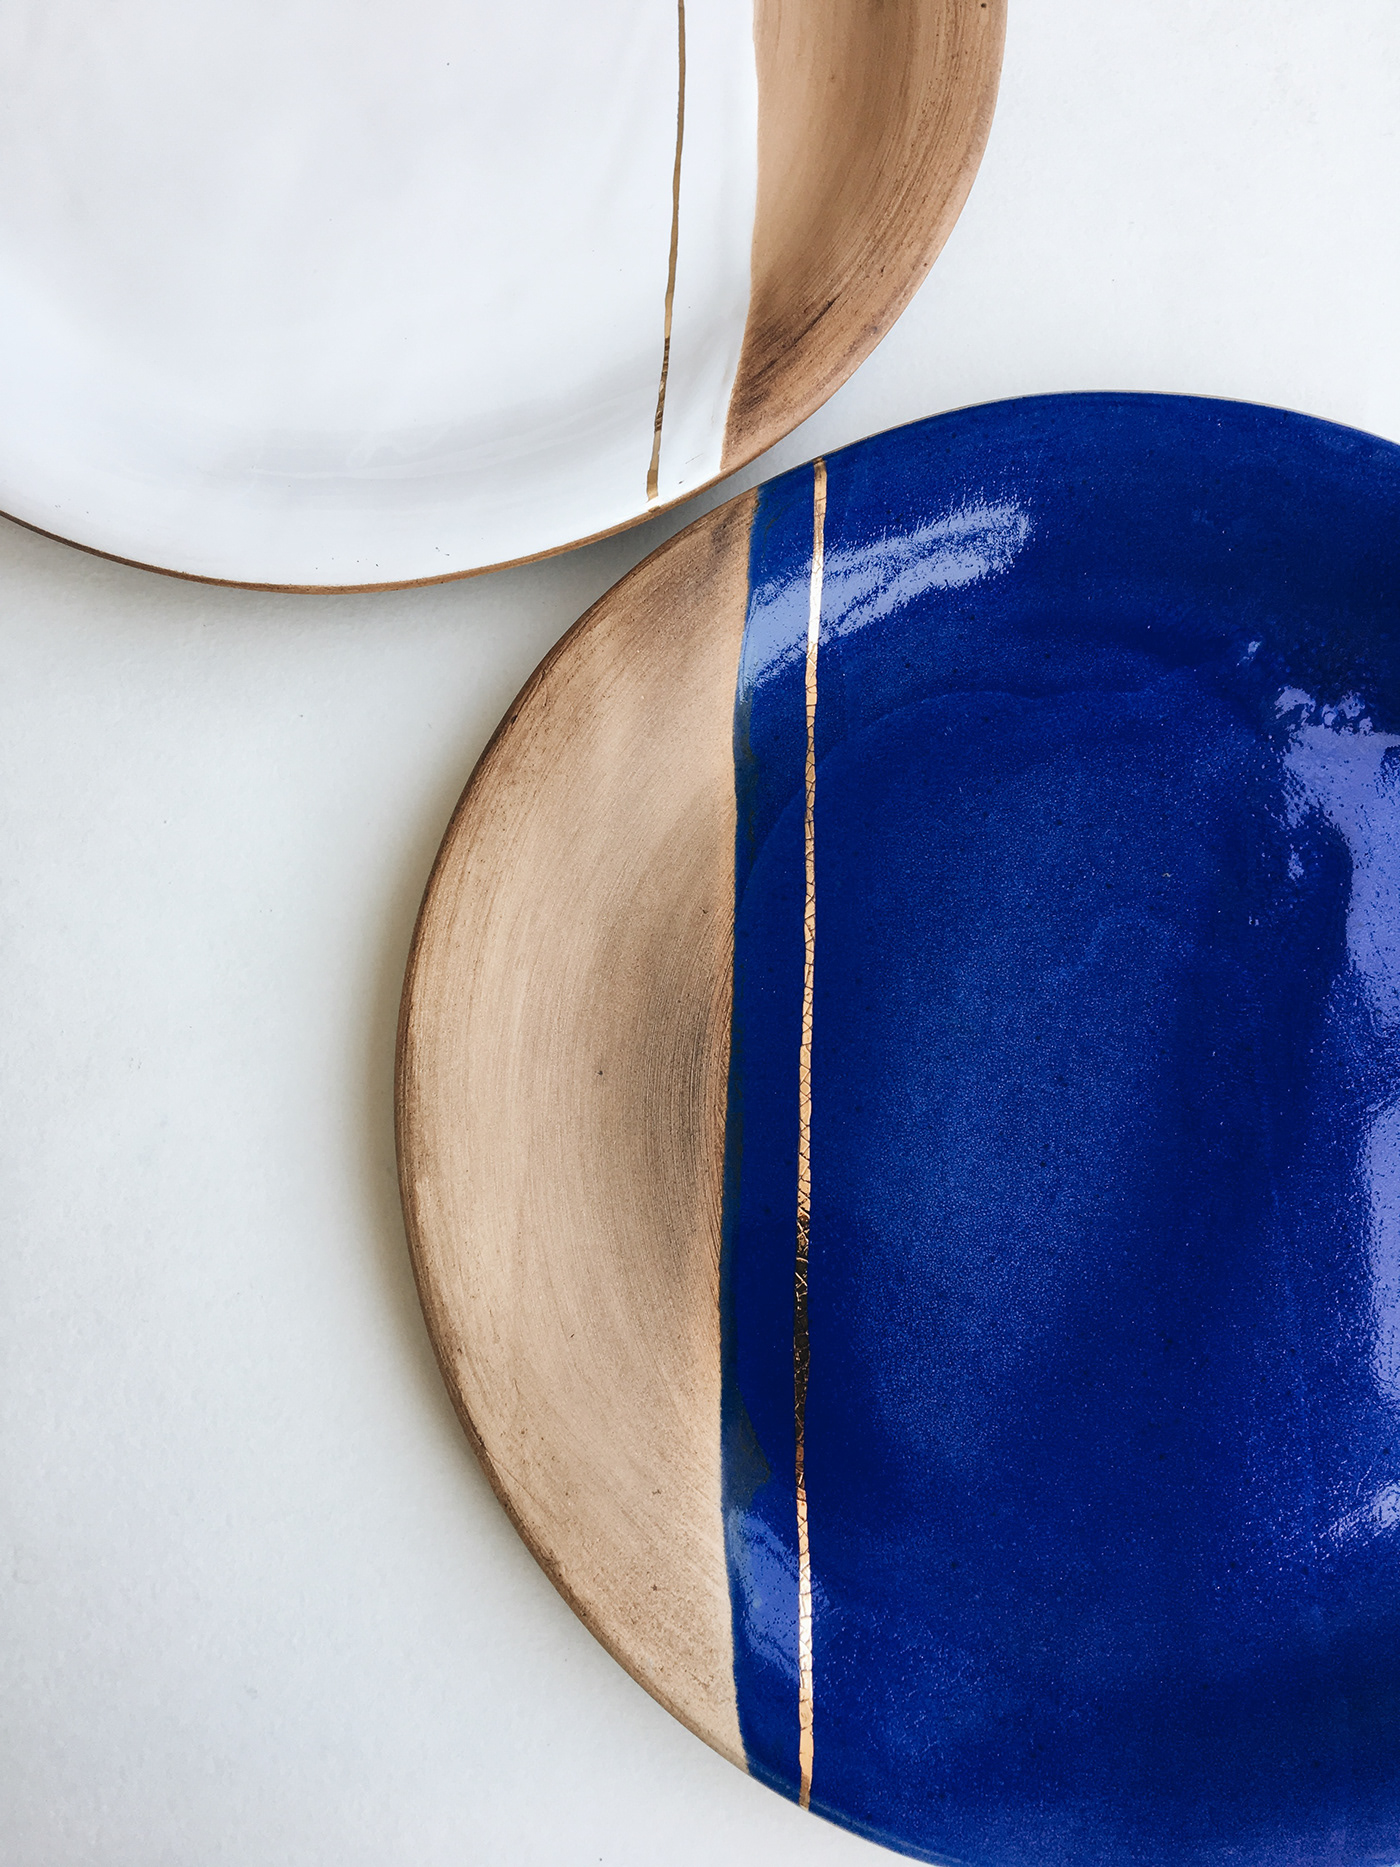 plates ceramic tableware